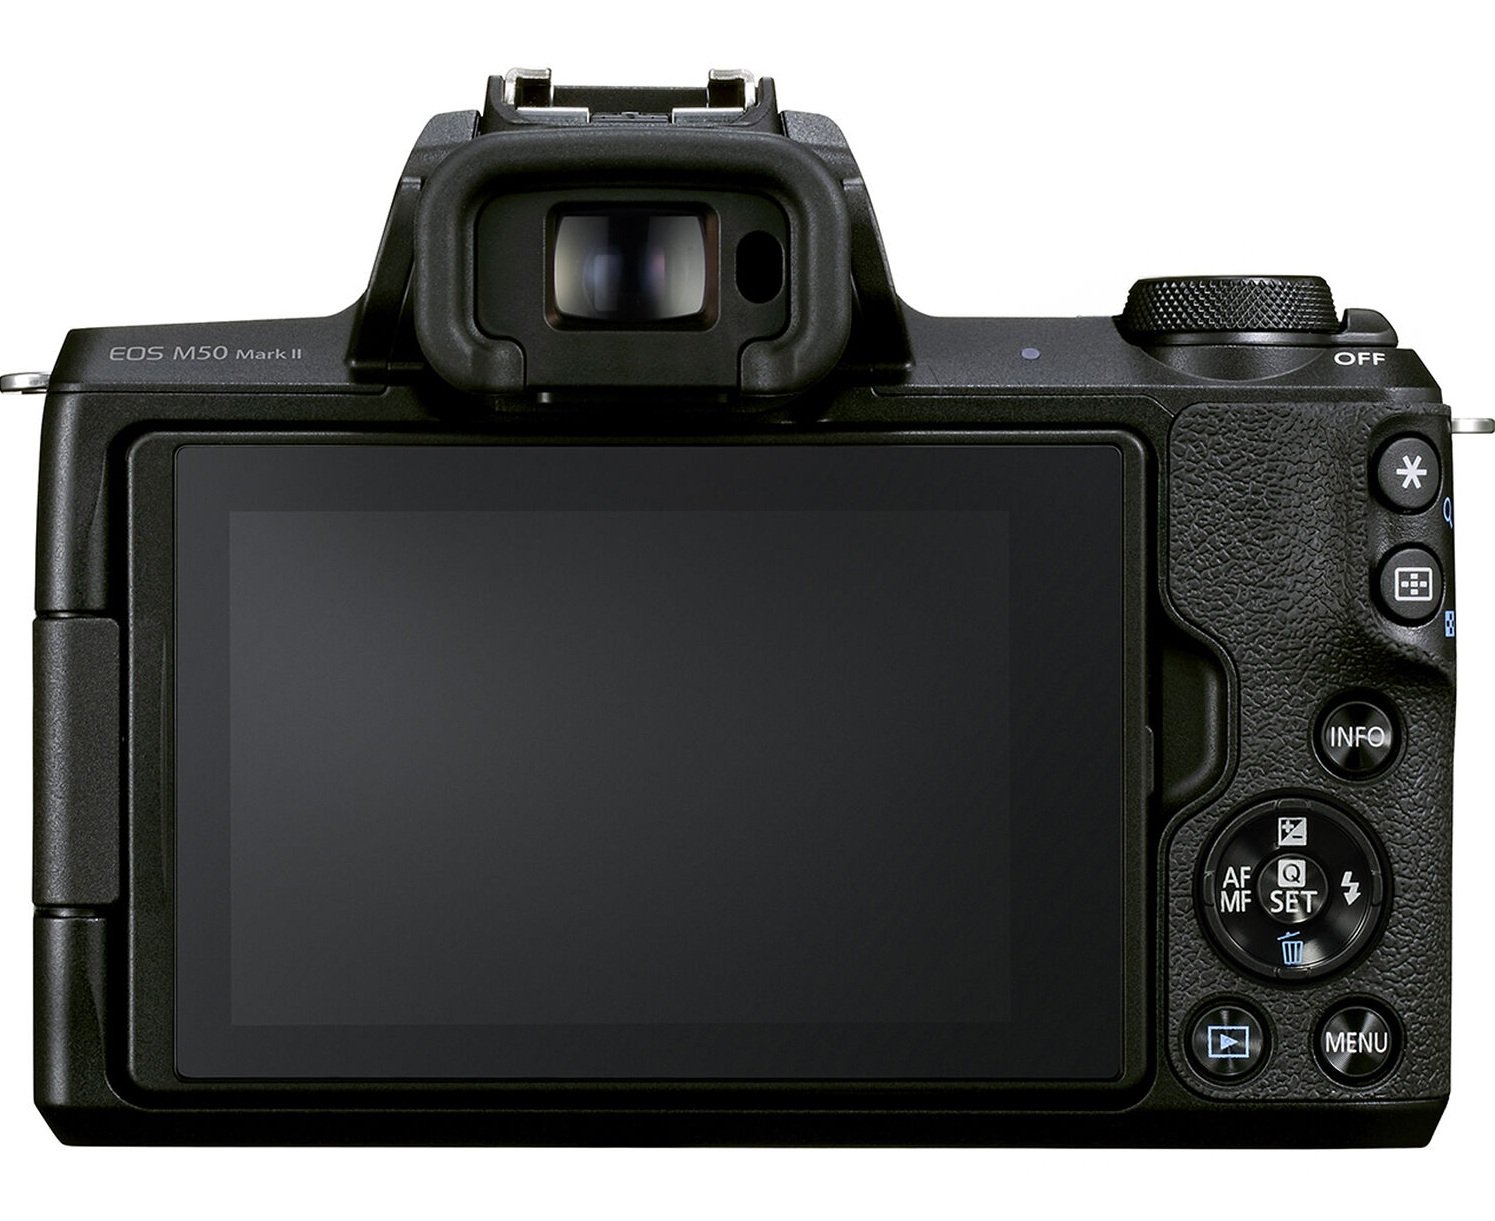 Canon EOS M50 II - Cung cấp hiệu suất lấy nét nhanh và mượt